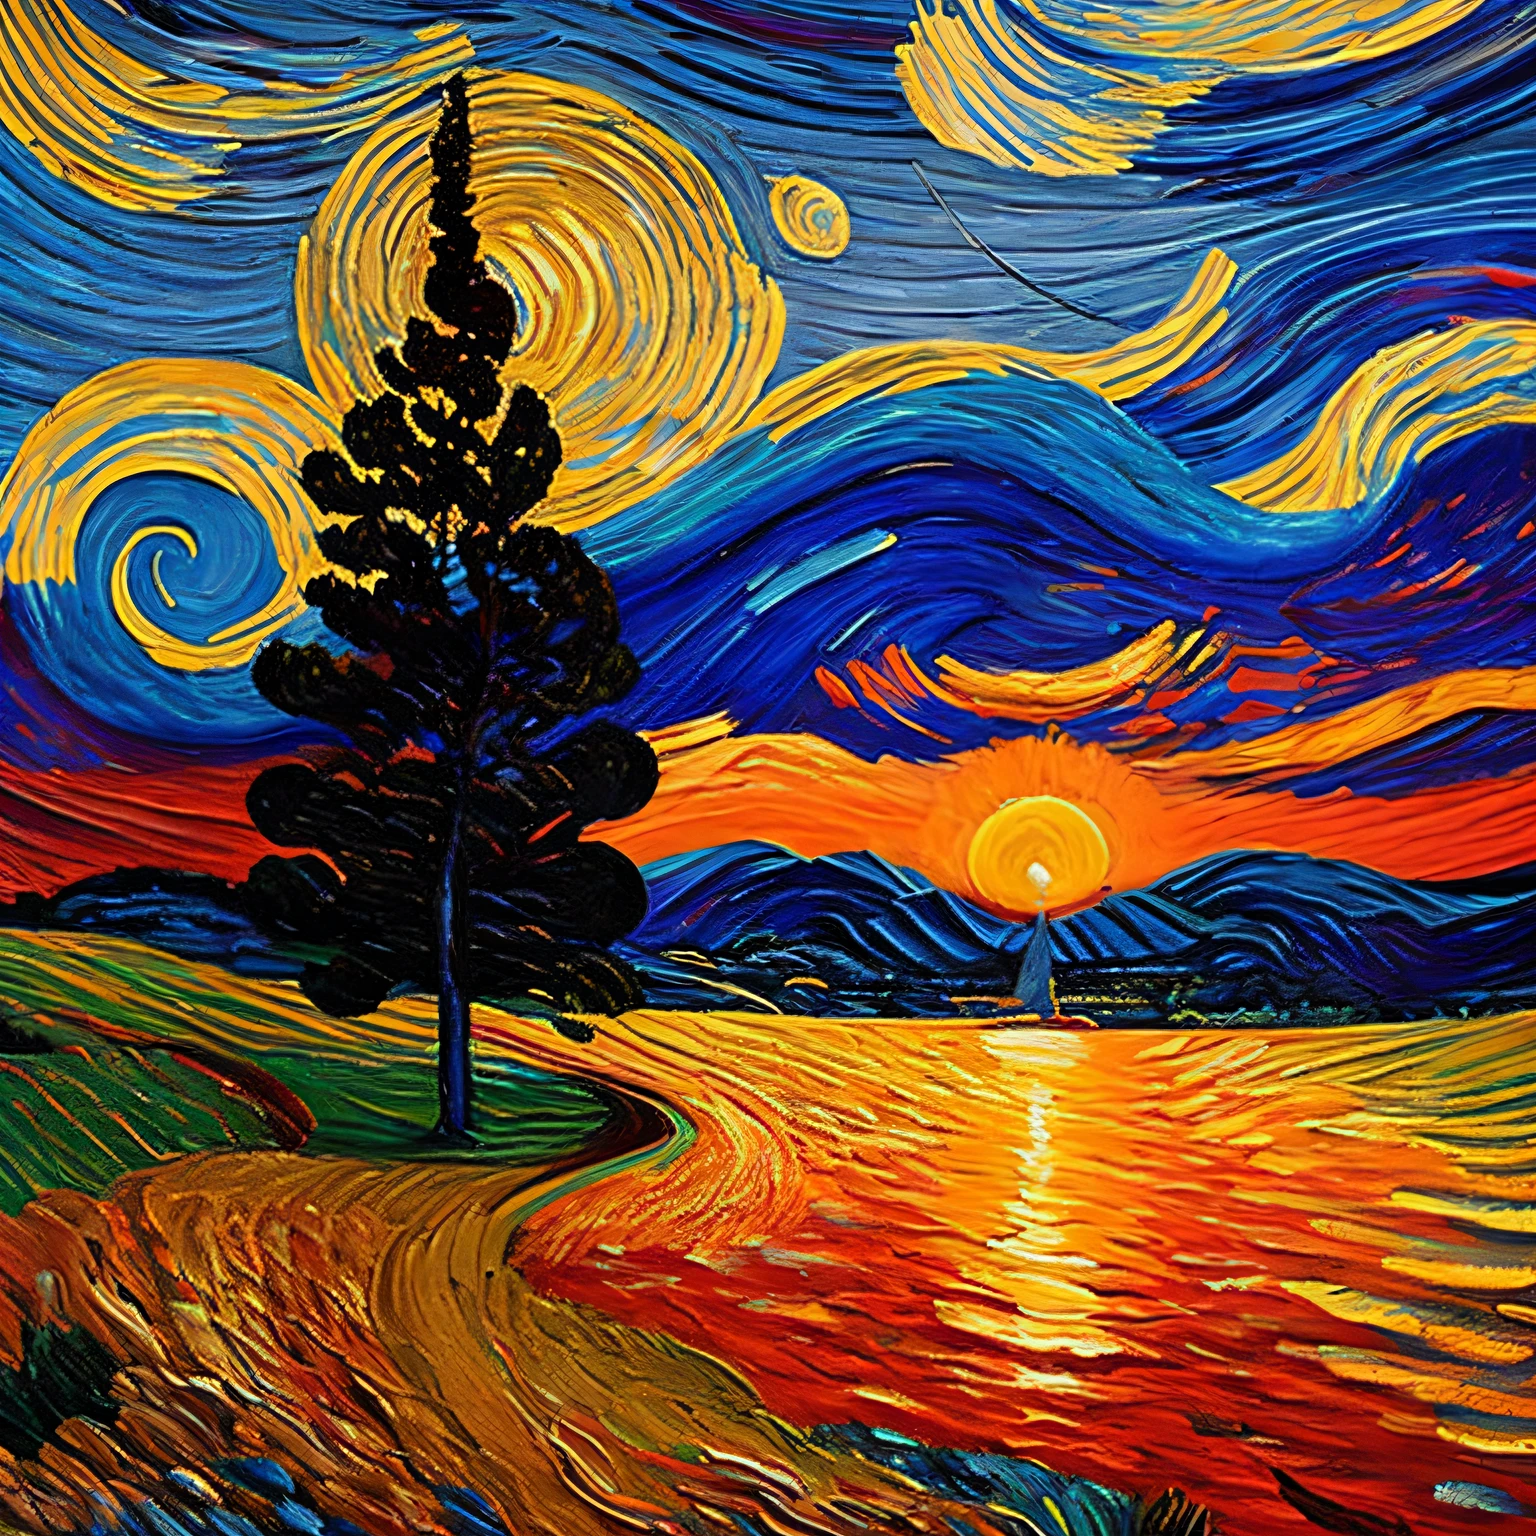 En un mundo reimaginado por los trazos de Van Gogh, los remolinos y remolinos familiares de "noche estrellada" Experimenta una transformación impresionante. En lugar de los azules tranquilos y los amarillos luminosos que representan un cielo nocturno, Una paleta vívida de naranjas intensos, rojos ardientes, y suaves púrpuras pinta el lienzo. La escena captura el momento brillante y transitorio de la puesta de sol.

Los remolinos celestes, una vez lleno de estrellas centelleantes, ahora acuna el sol poniente, su orbe ardiente descendiendo lentamente, proyectando un resplandor radiante que baila y se entremezcla con los remolinos de color circundantes. Los cipreses, todavía extendiéndose hacia arriba en sus siluetas oscurecidas, parecen estirarse aún más, como si tratara de aferrarse a los últimos restos de luz del día.

En la ciudad de abajo, La calidez, La luz ámbar de la puesta de sol baña los pintorescos edificios, proyectando sombras alargadas y transformando la ciudad en un remanso de tonos dorados. El campanario de la iglesia, un centinela solitario contra la noche, now stands outlined by the sun's pasiónate embrace, Su estructura adquiere un aspecto suave, Cualidad casi etérea.

Cada pincelada, con su intensidad vívida, transmite la respuesta emocional del artista a esta, sin embargo, espectáculo milagroso. Esto no es solo una puesta de sol; es el atardecer de Van Gogh, Una obra maestra arremolinada de calidez, pasión, y un momento fugaz en el tiempo, capturado para siempre en el lienzo.